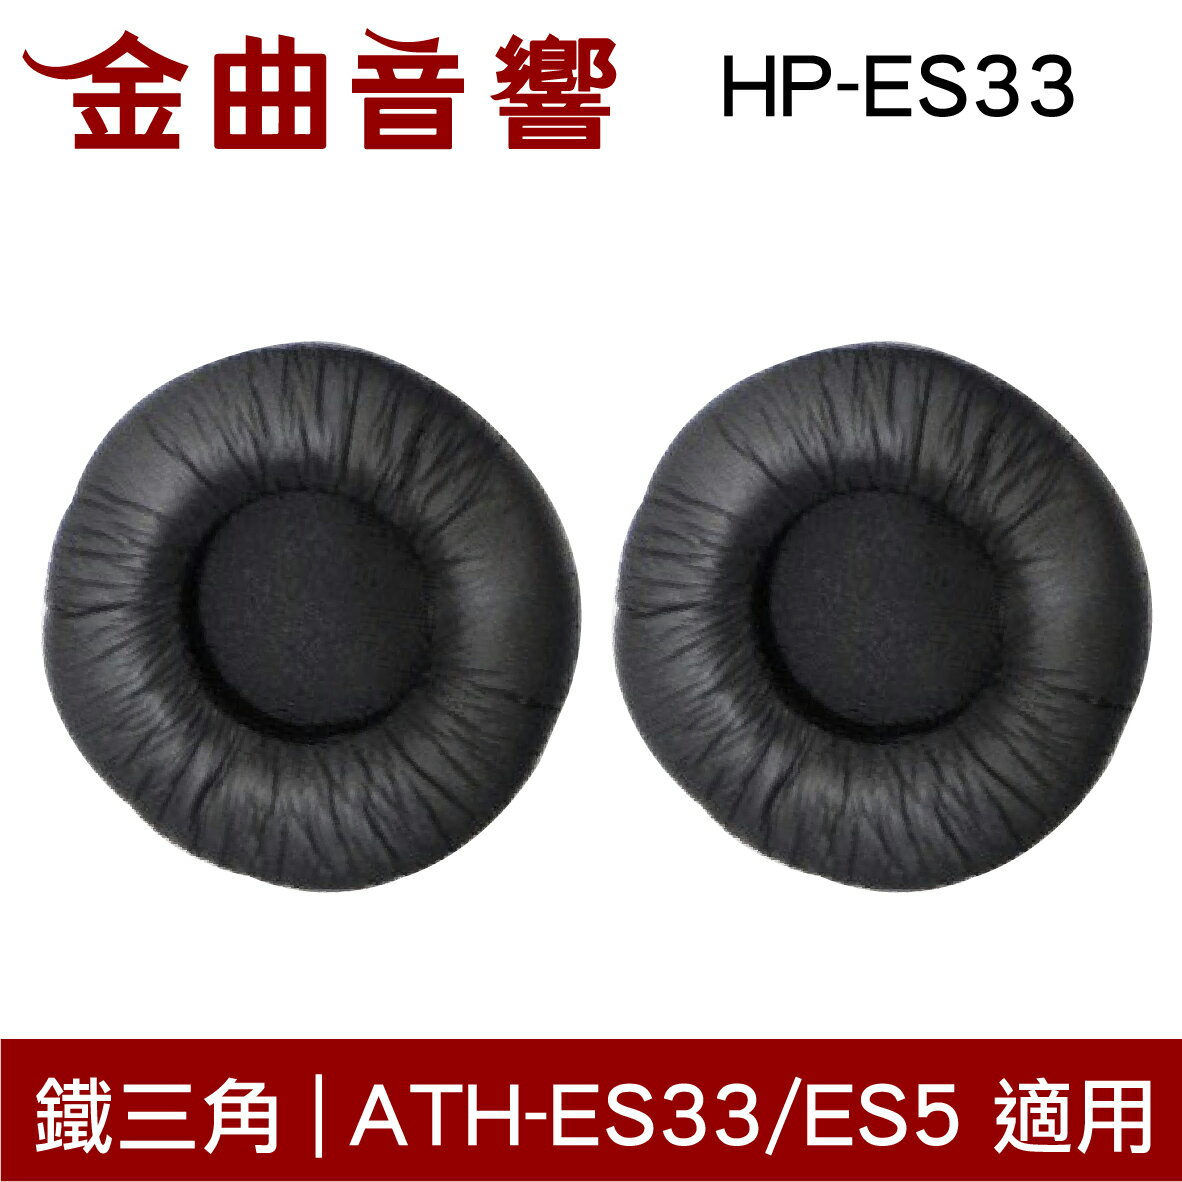 鐵三角 HP-ES33 替換耳罩 一對 ATH-ES33 ATH-ES5 適用 | 金曲音響